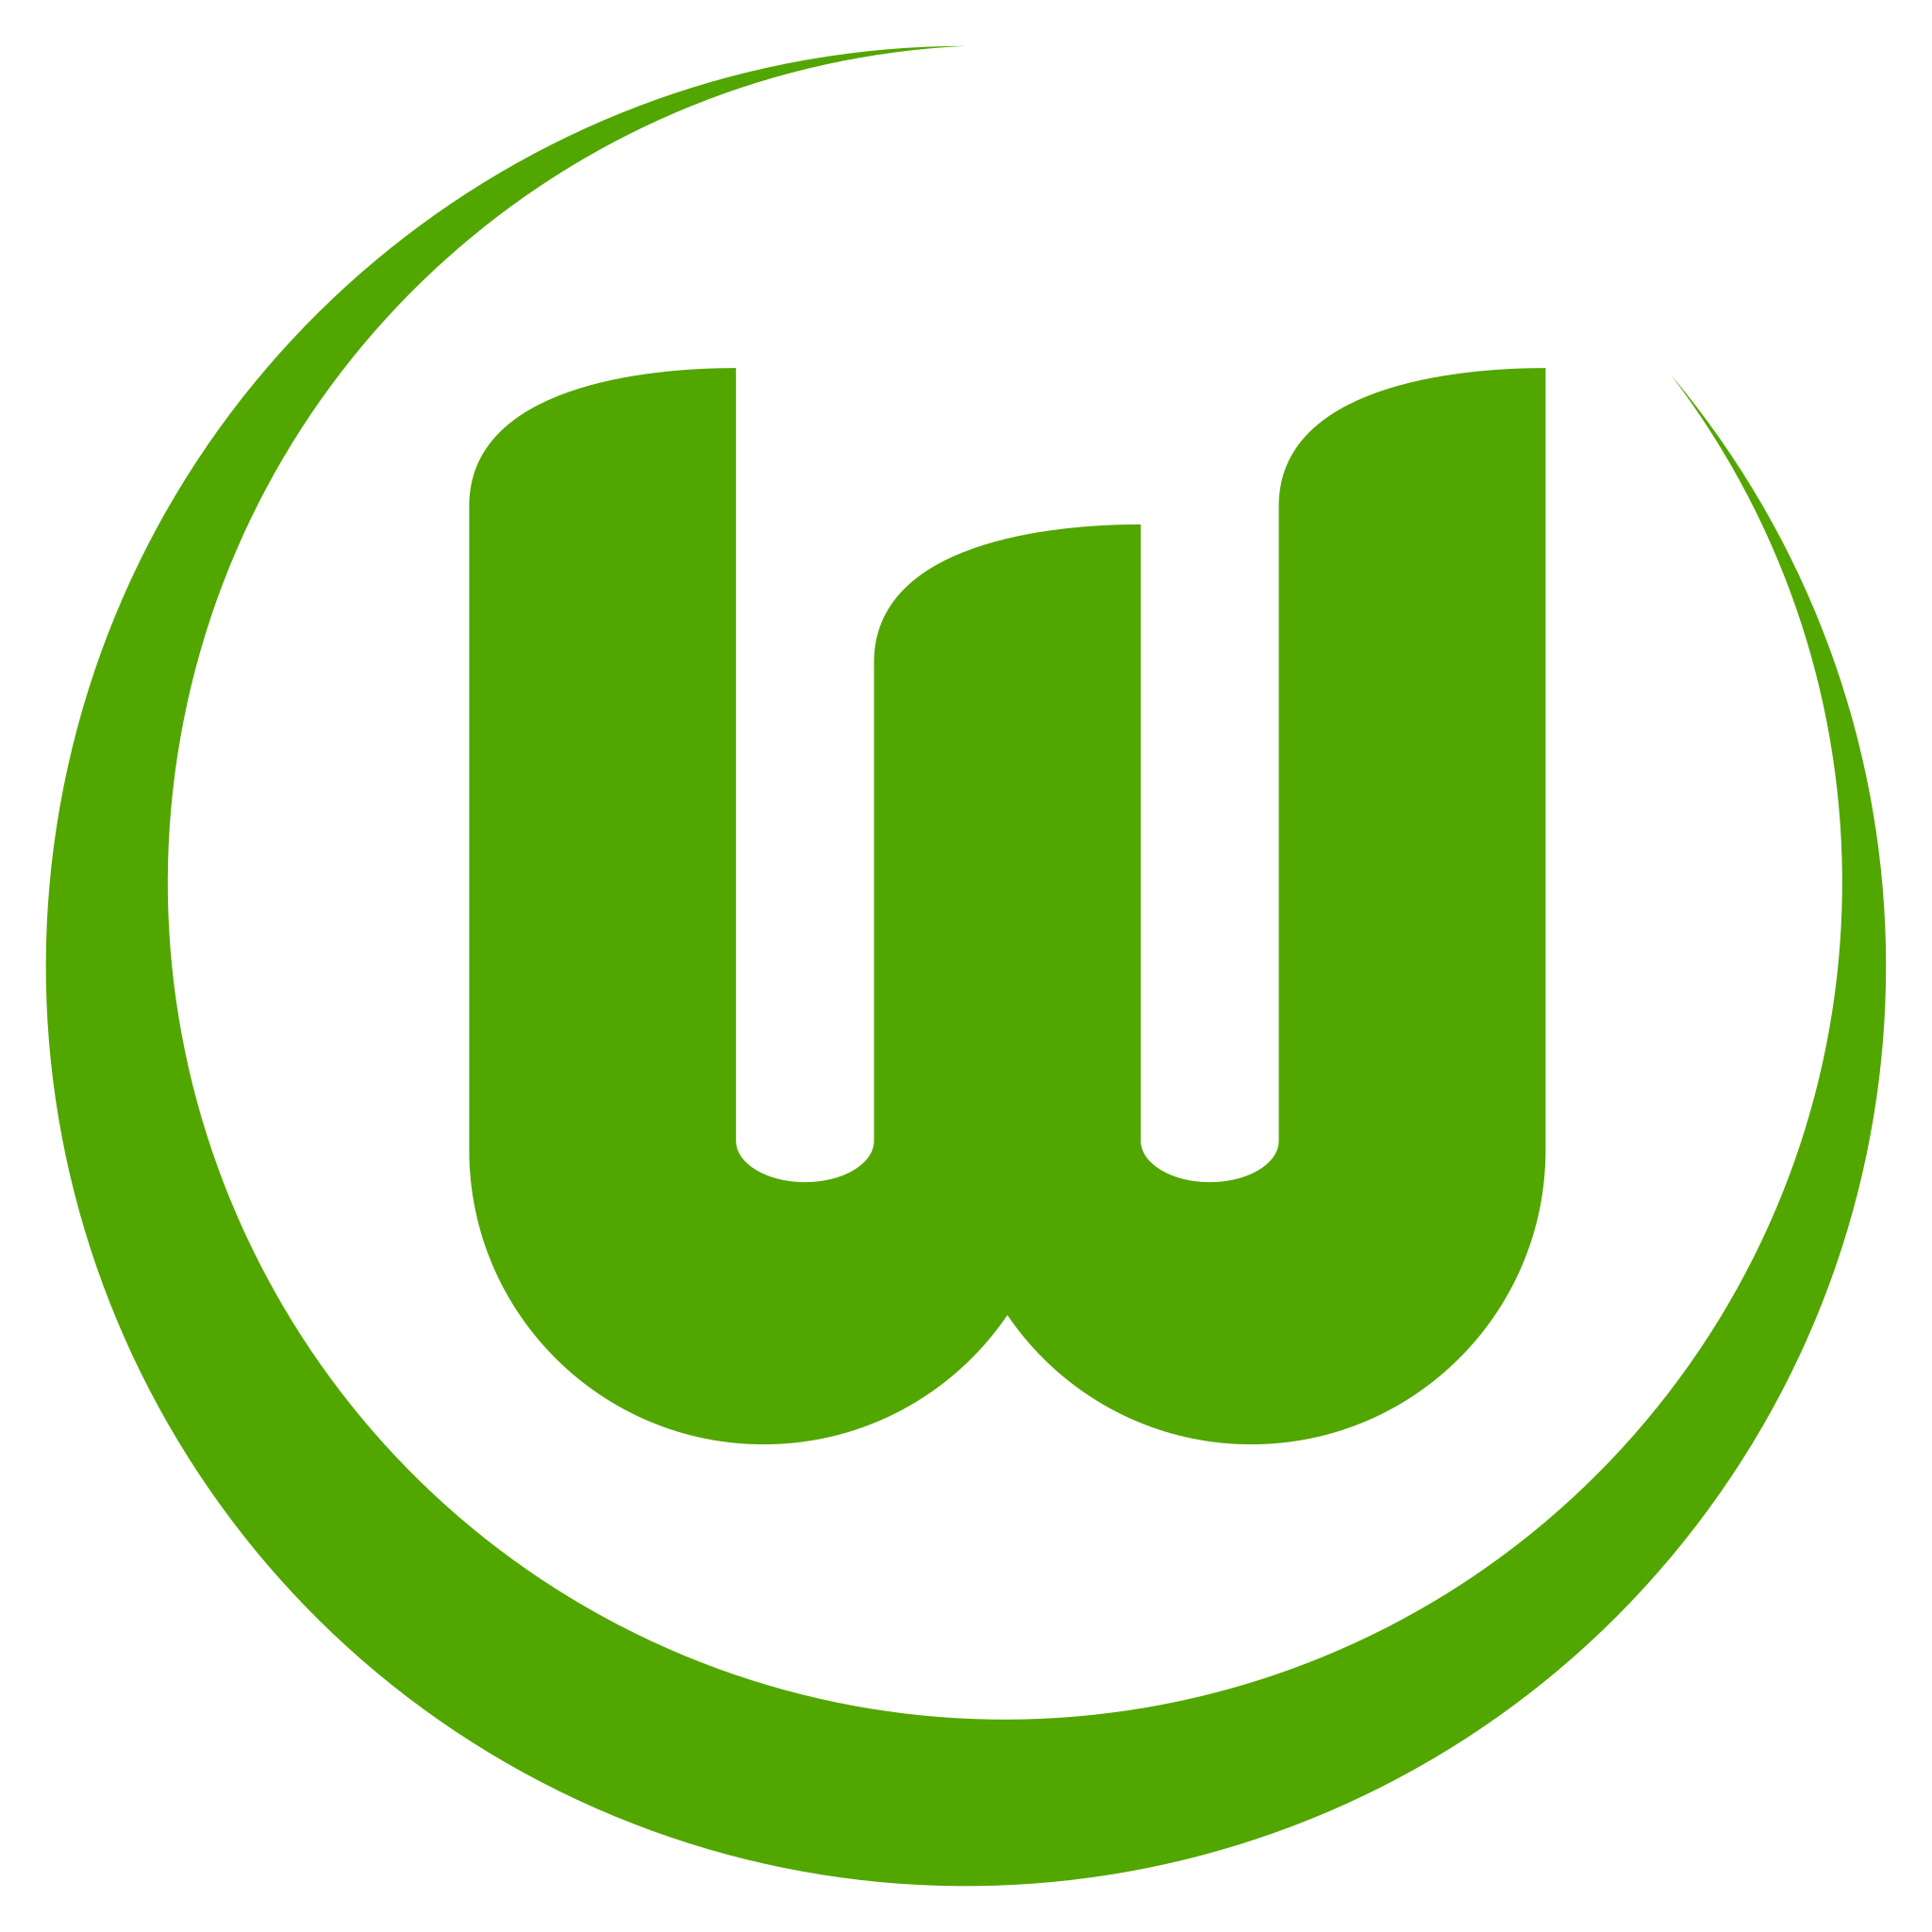 File:VfL Wolfsburg Logo.svg - Wikipedia